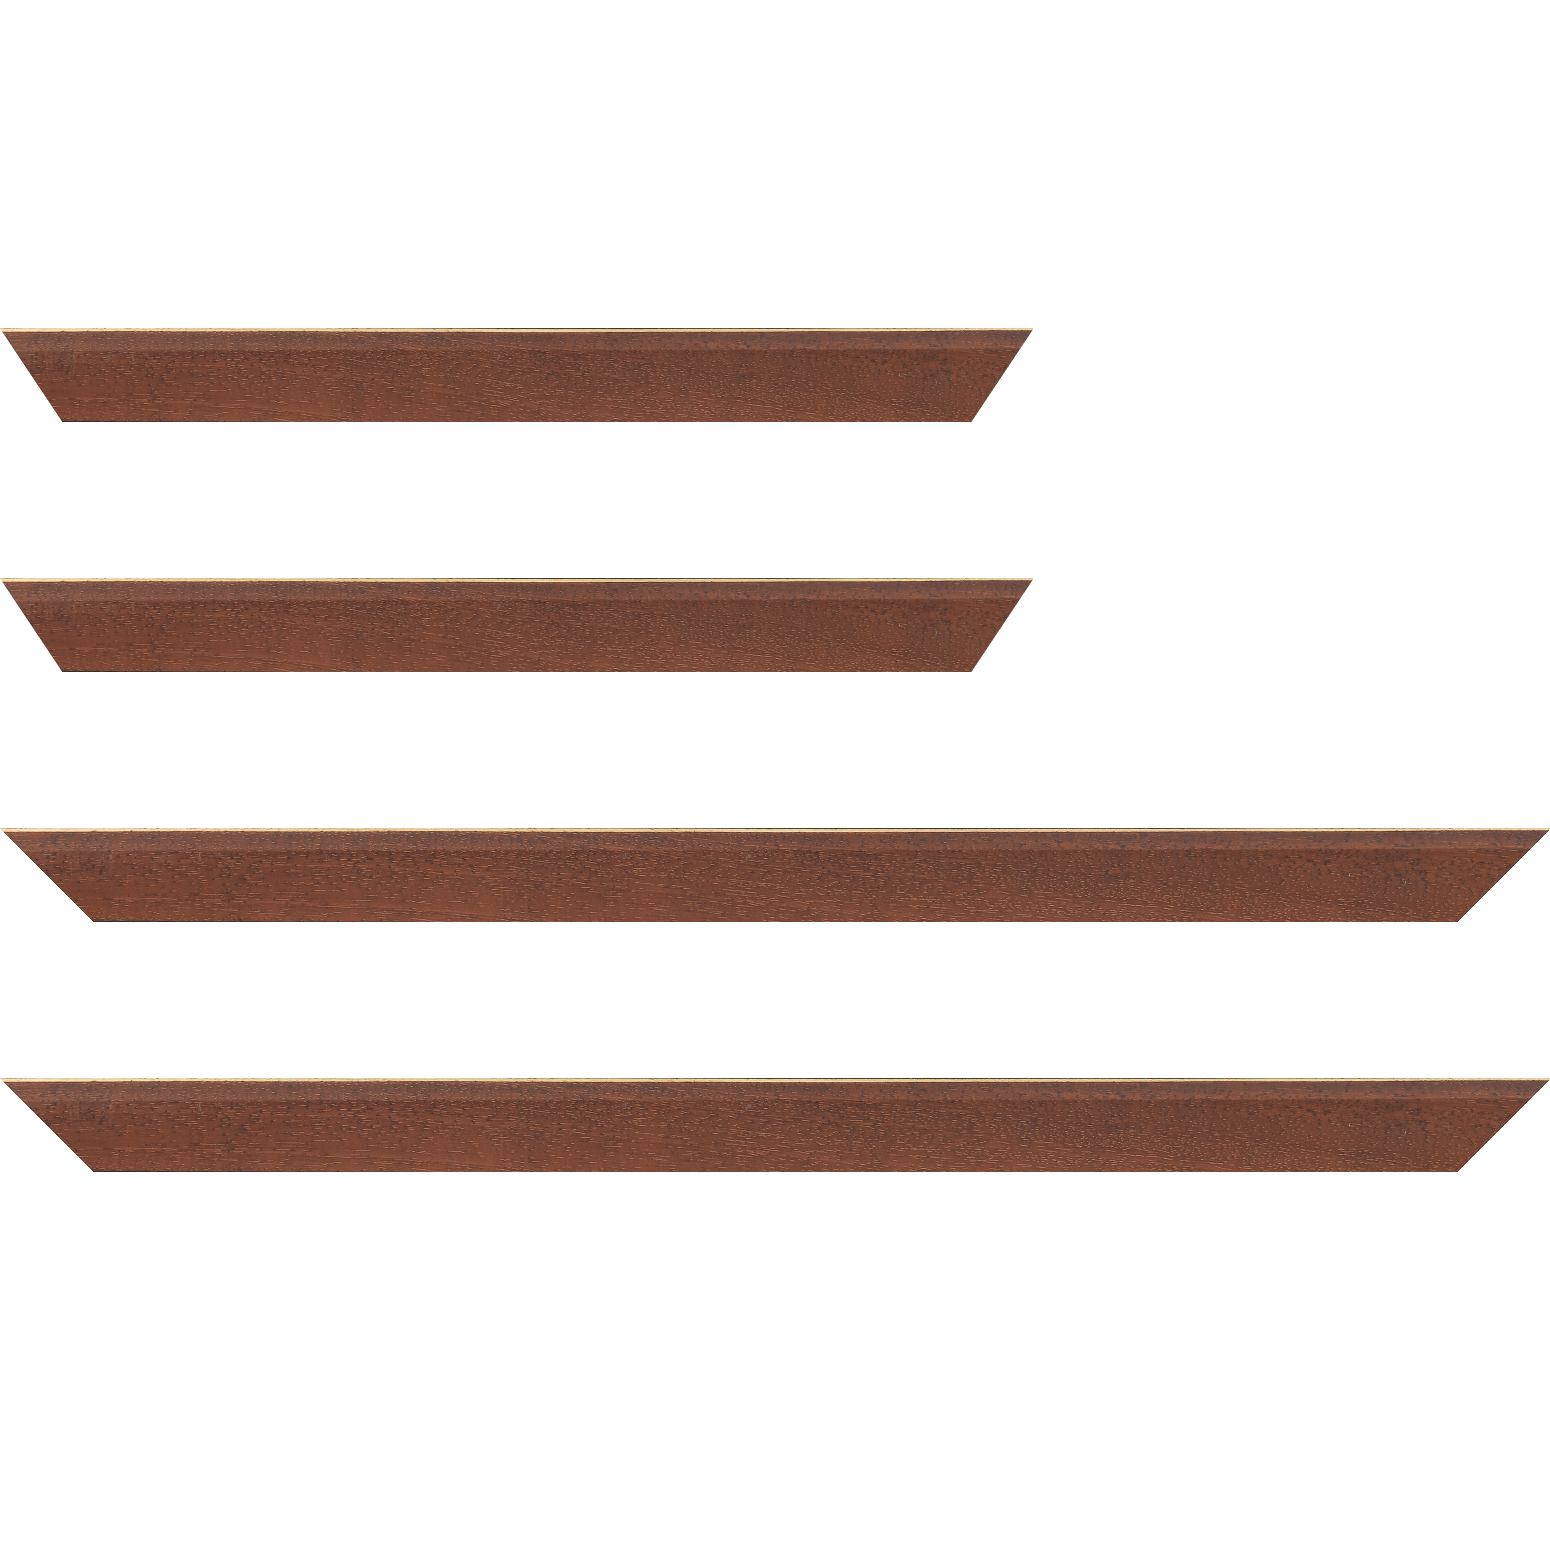 Baguette bois profil plat escalier largeur 3cm couleur marron miel satiné filet créme extérieur